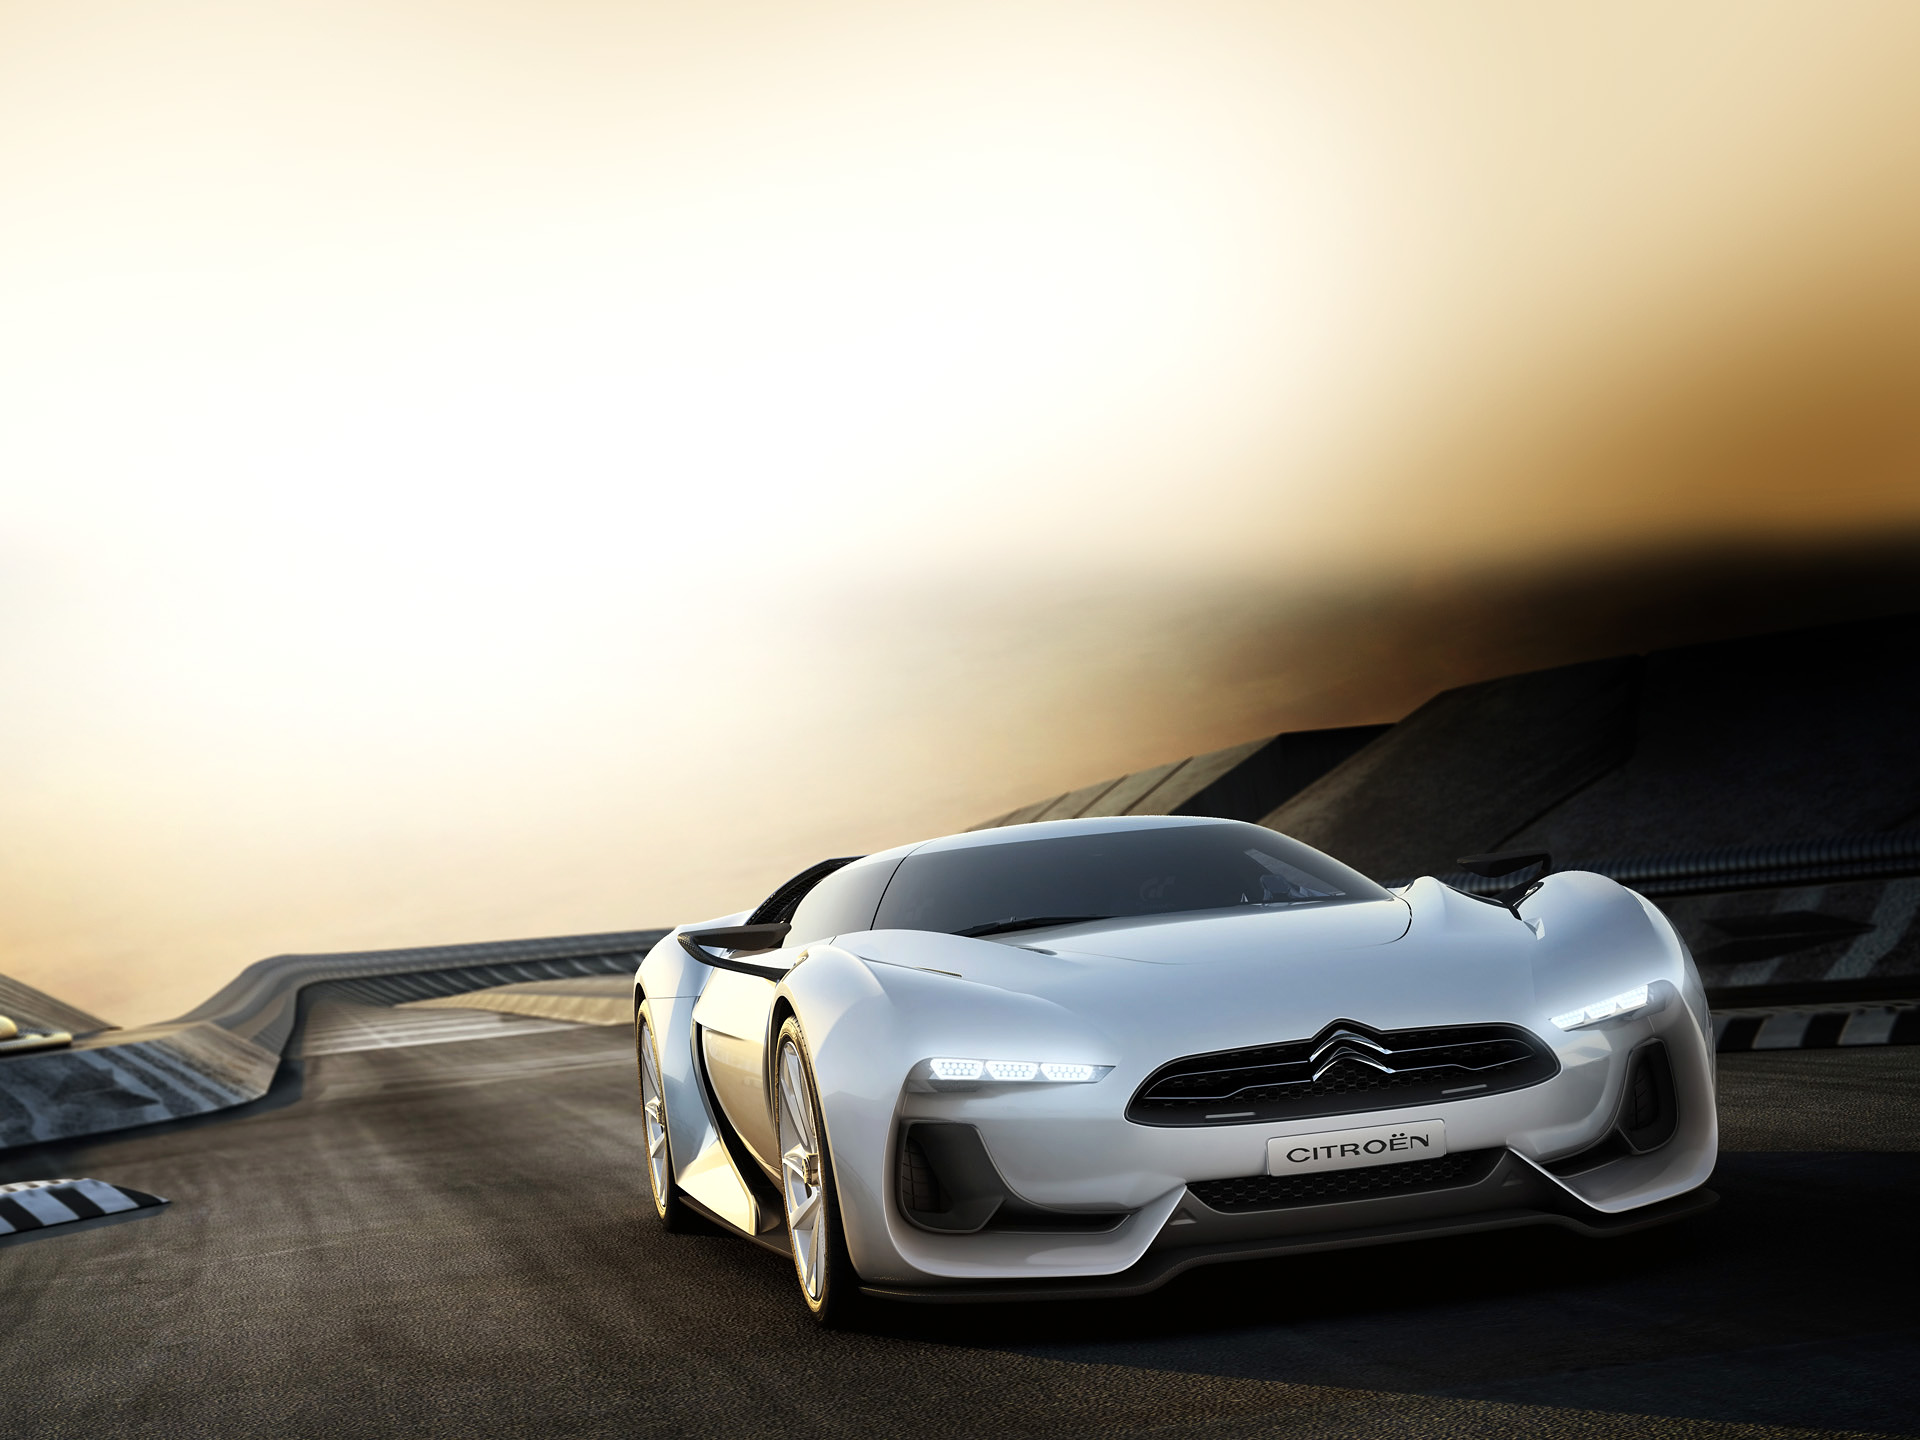 Los mejores fondos de pantalla de Concepto Citroën Gt para la pantalla del teléfono